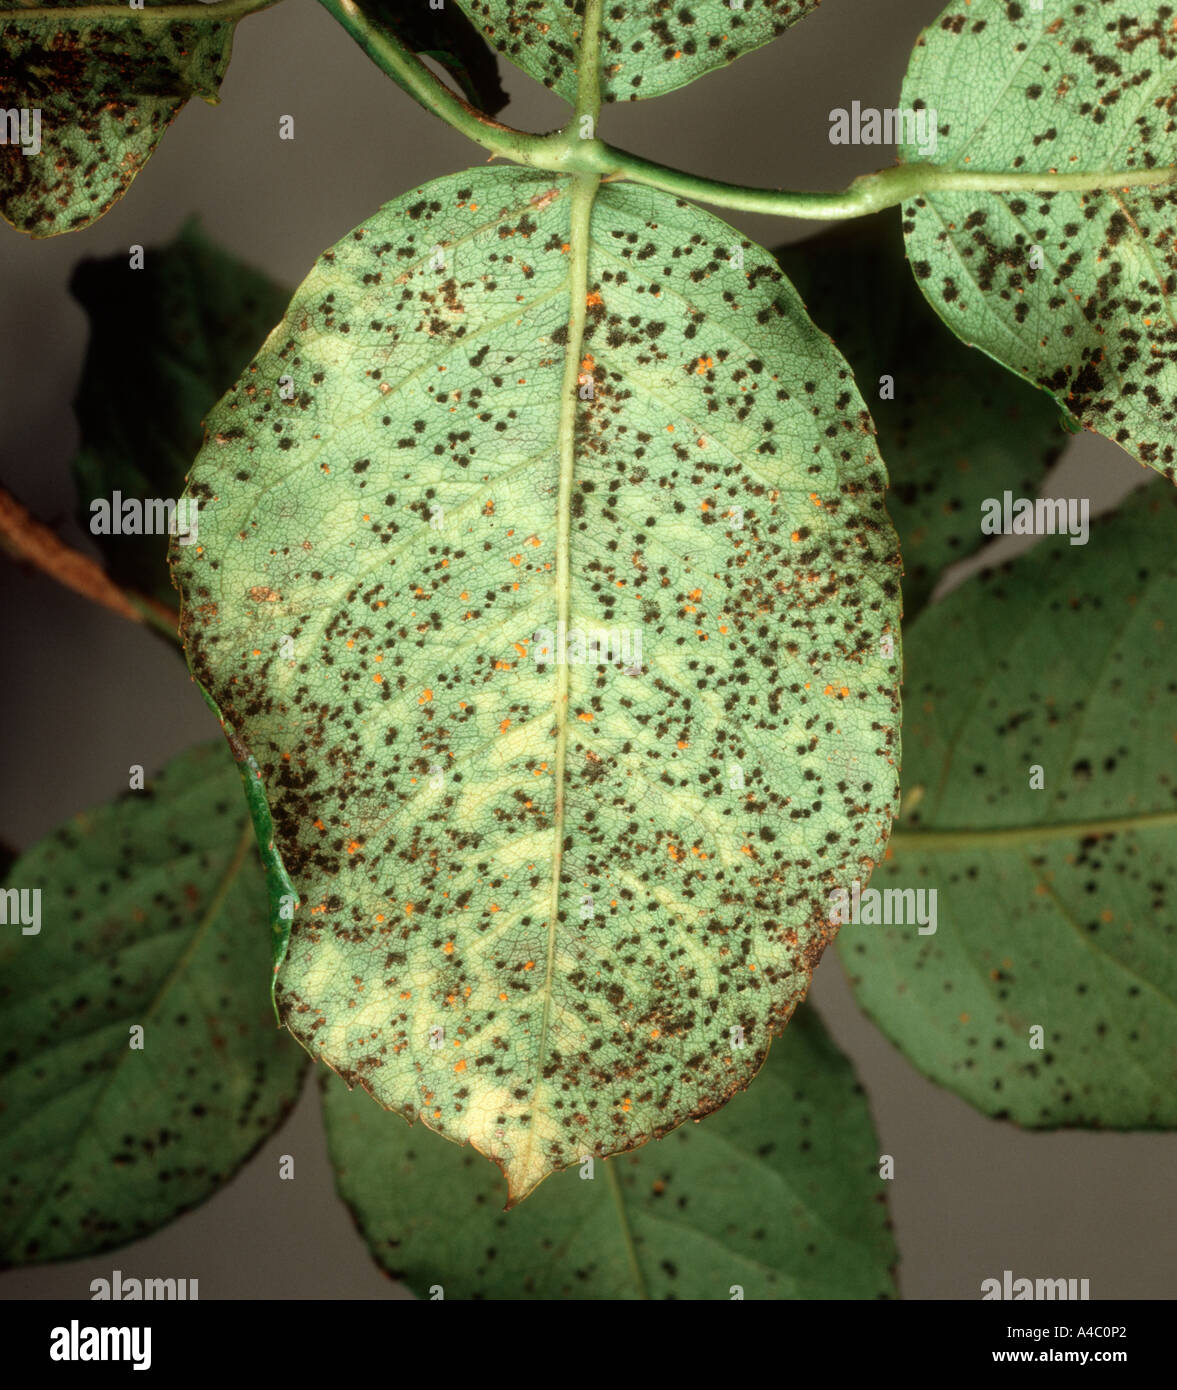 Rose rust Phragmidium tuberculatum teliospore pustules on leaf underside Stock Photo